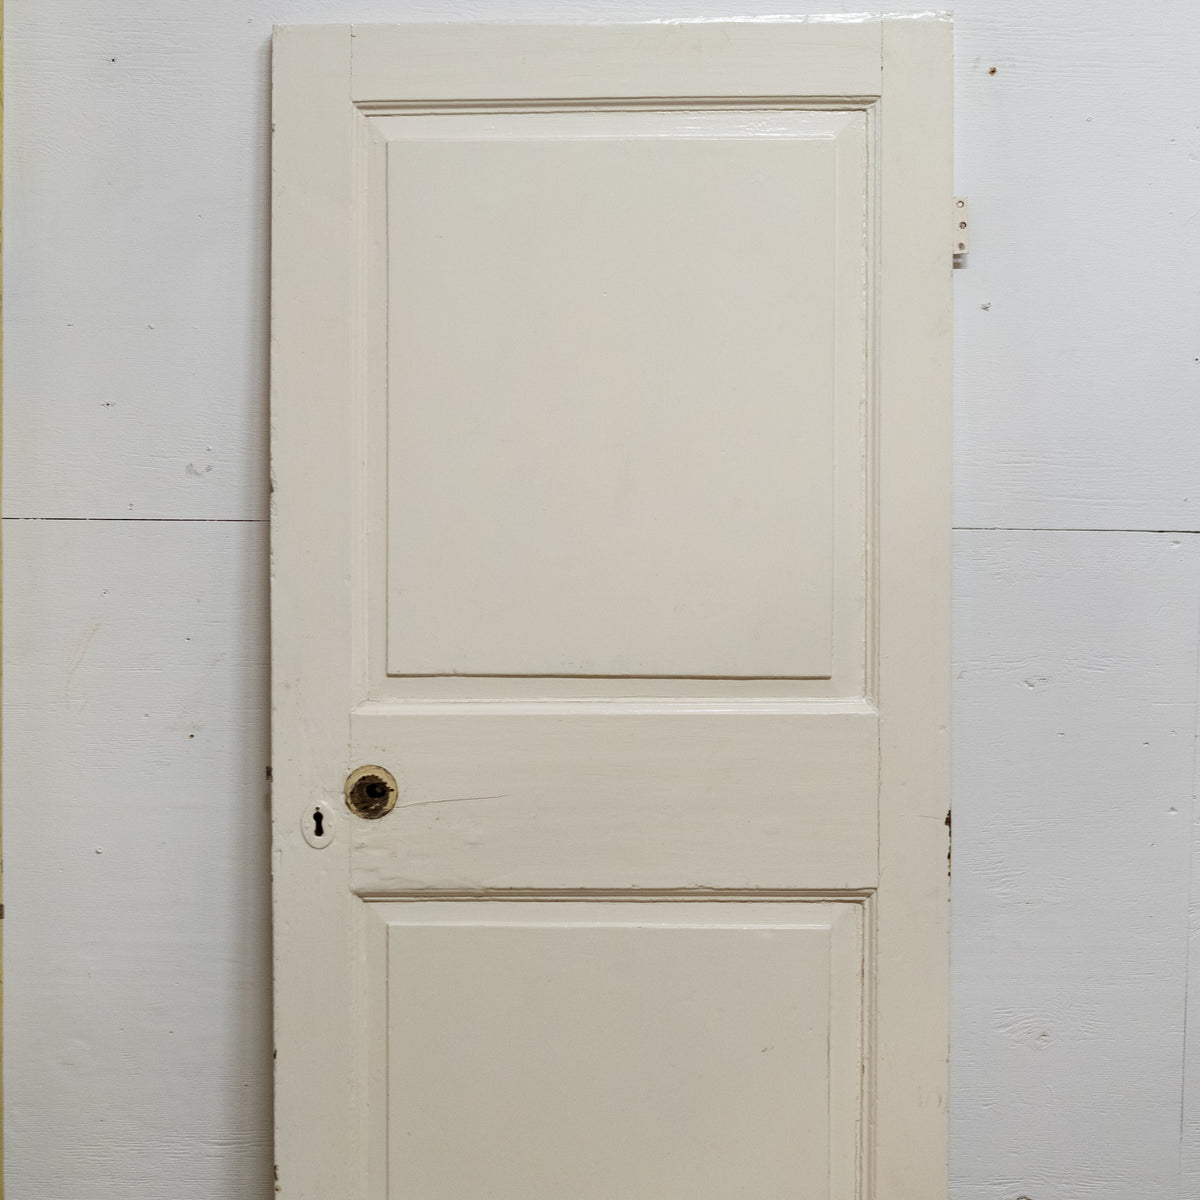 Antique Georgian 2 Panel Door - 179.5cm x 77cm | The Architectural Forum